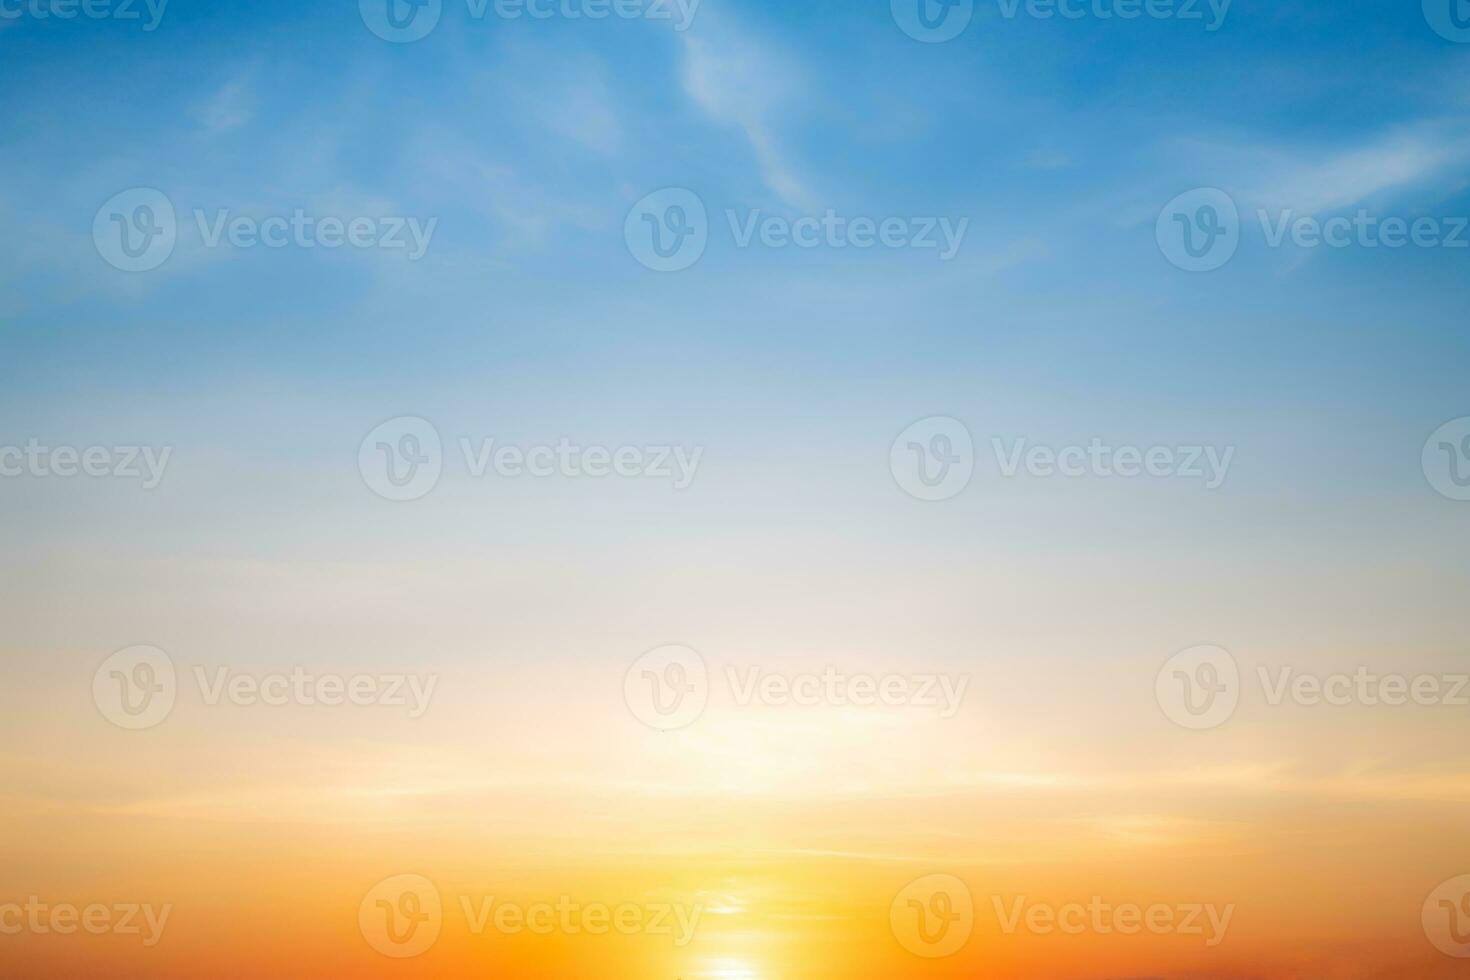 echt tolle schön Sonnenaufgang und Luxus Sanft Gradient Orange Gold Wolken mit Sonnenlicht auf das Blau Himmel perfekt zum das Hintergrund, nehmen im immer, Dämmerung Sonnenuntergang Himmel mit sanft bunt Wolken foto